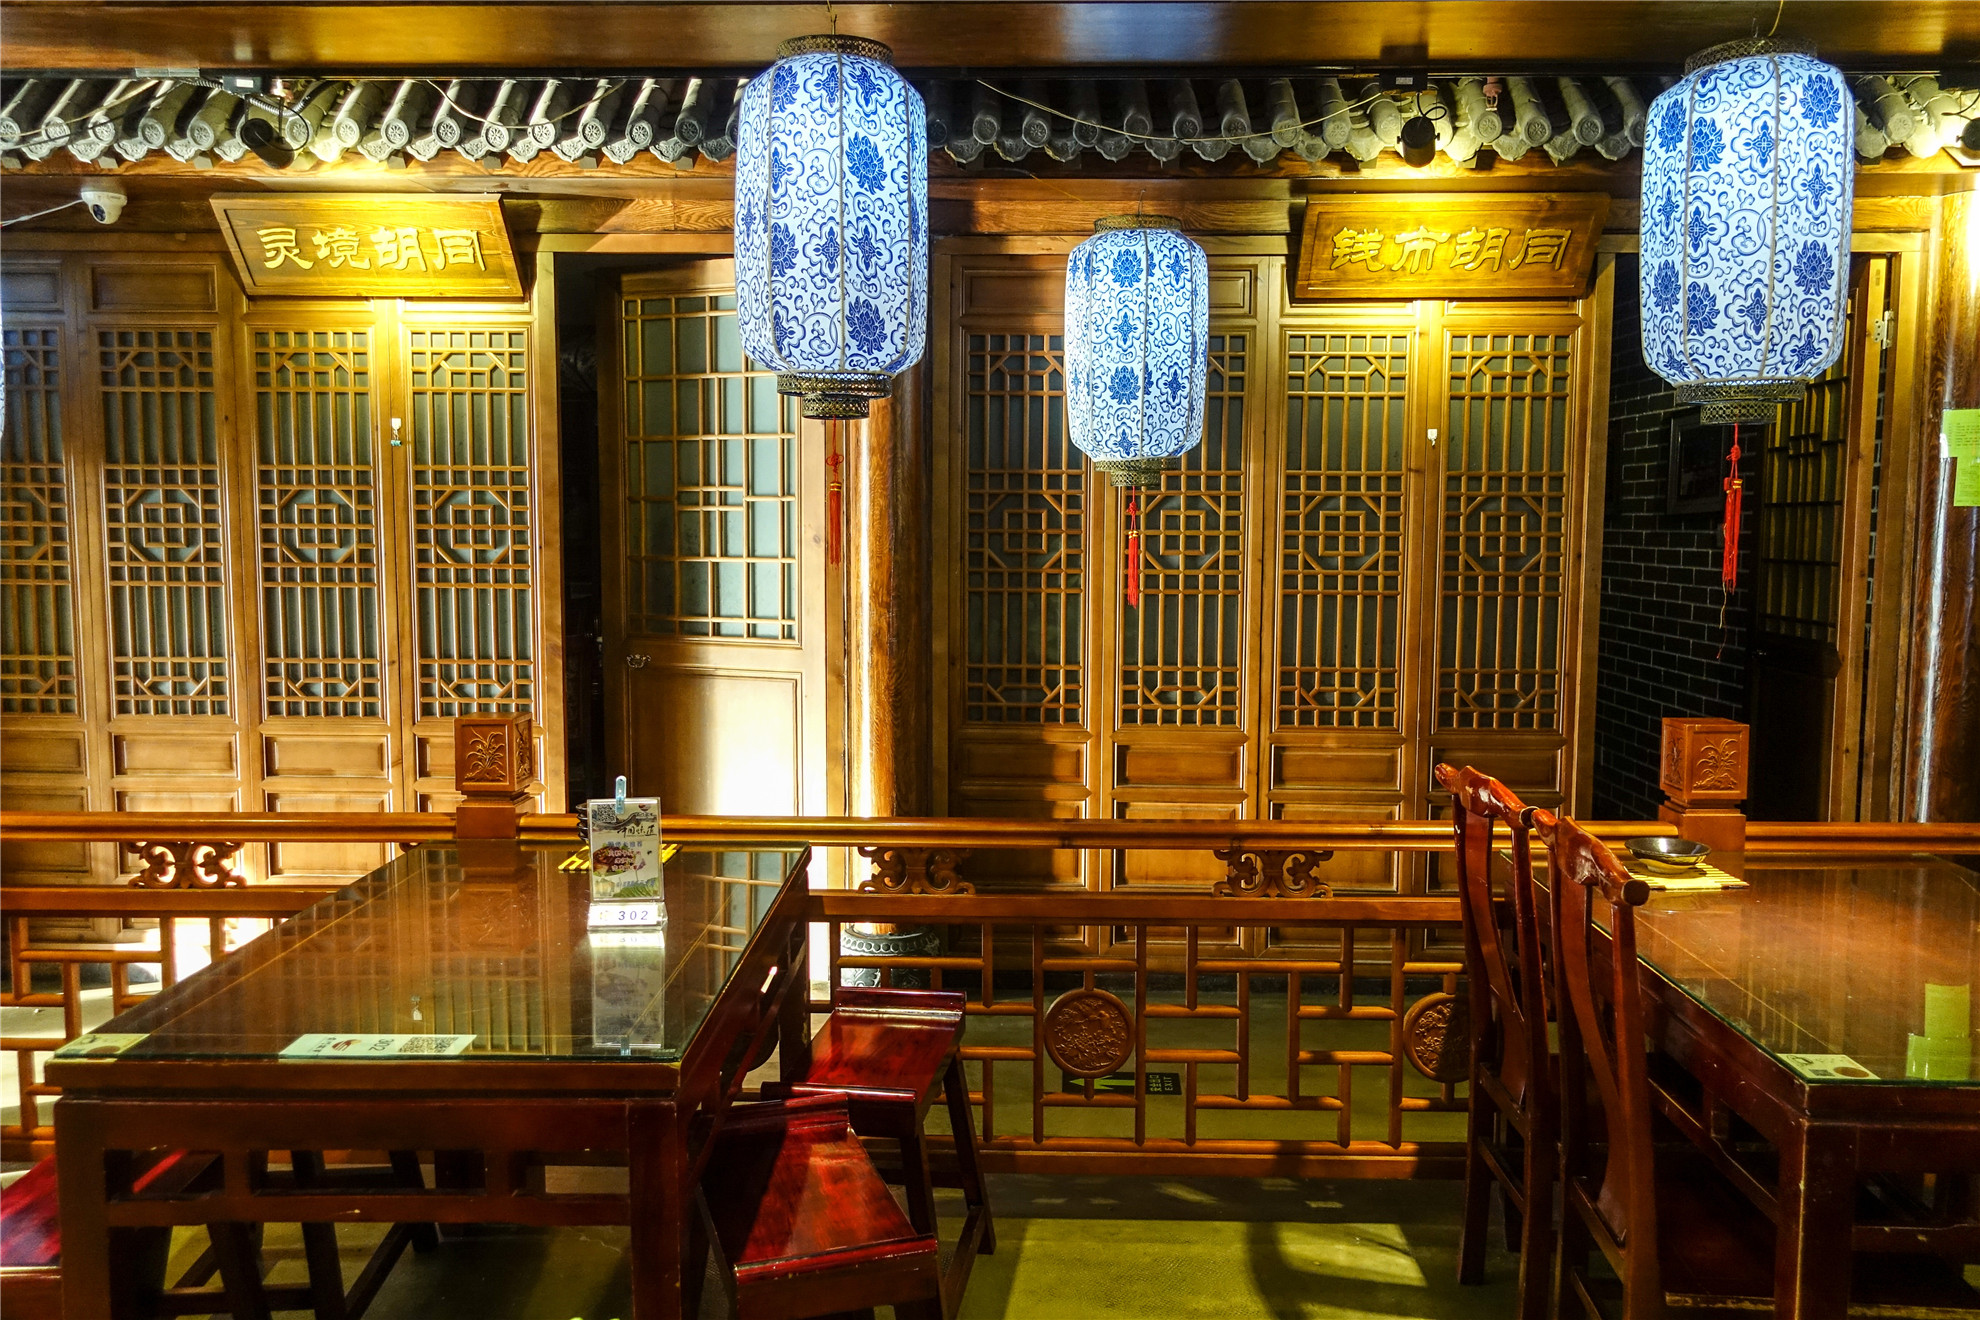 餐厅内部极具老北京风情,包间均以胡同命名